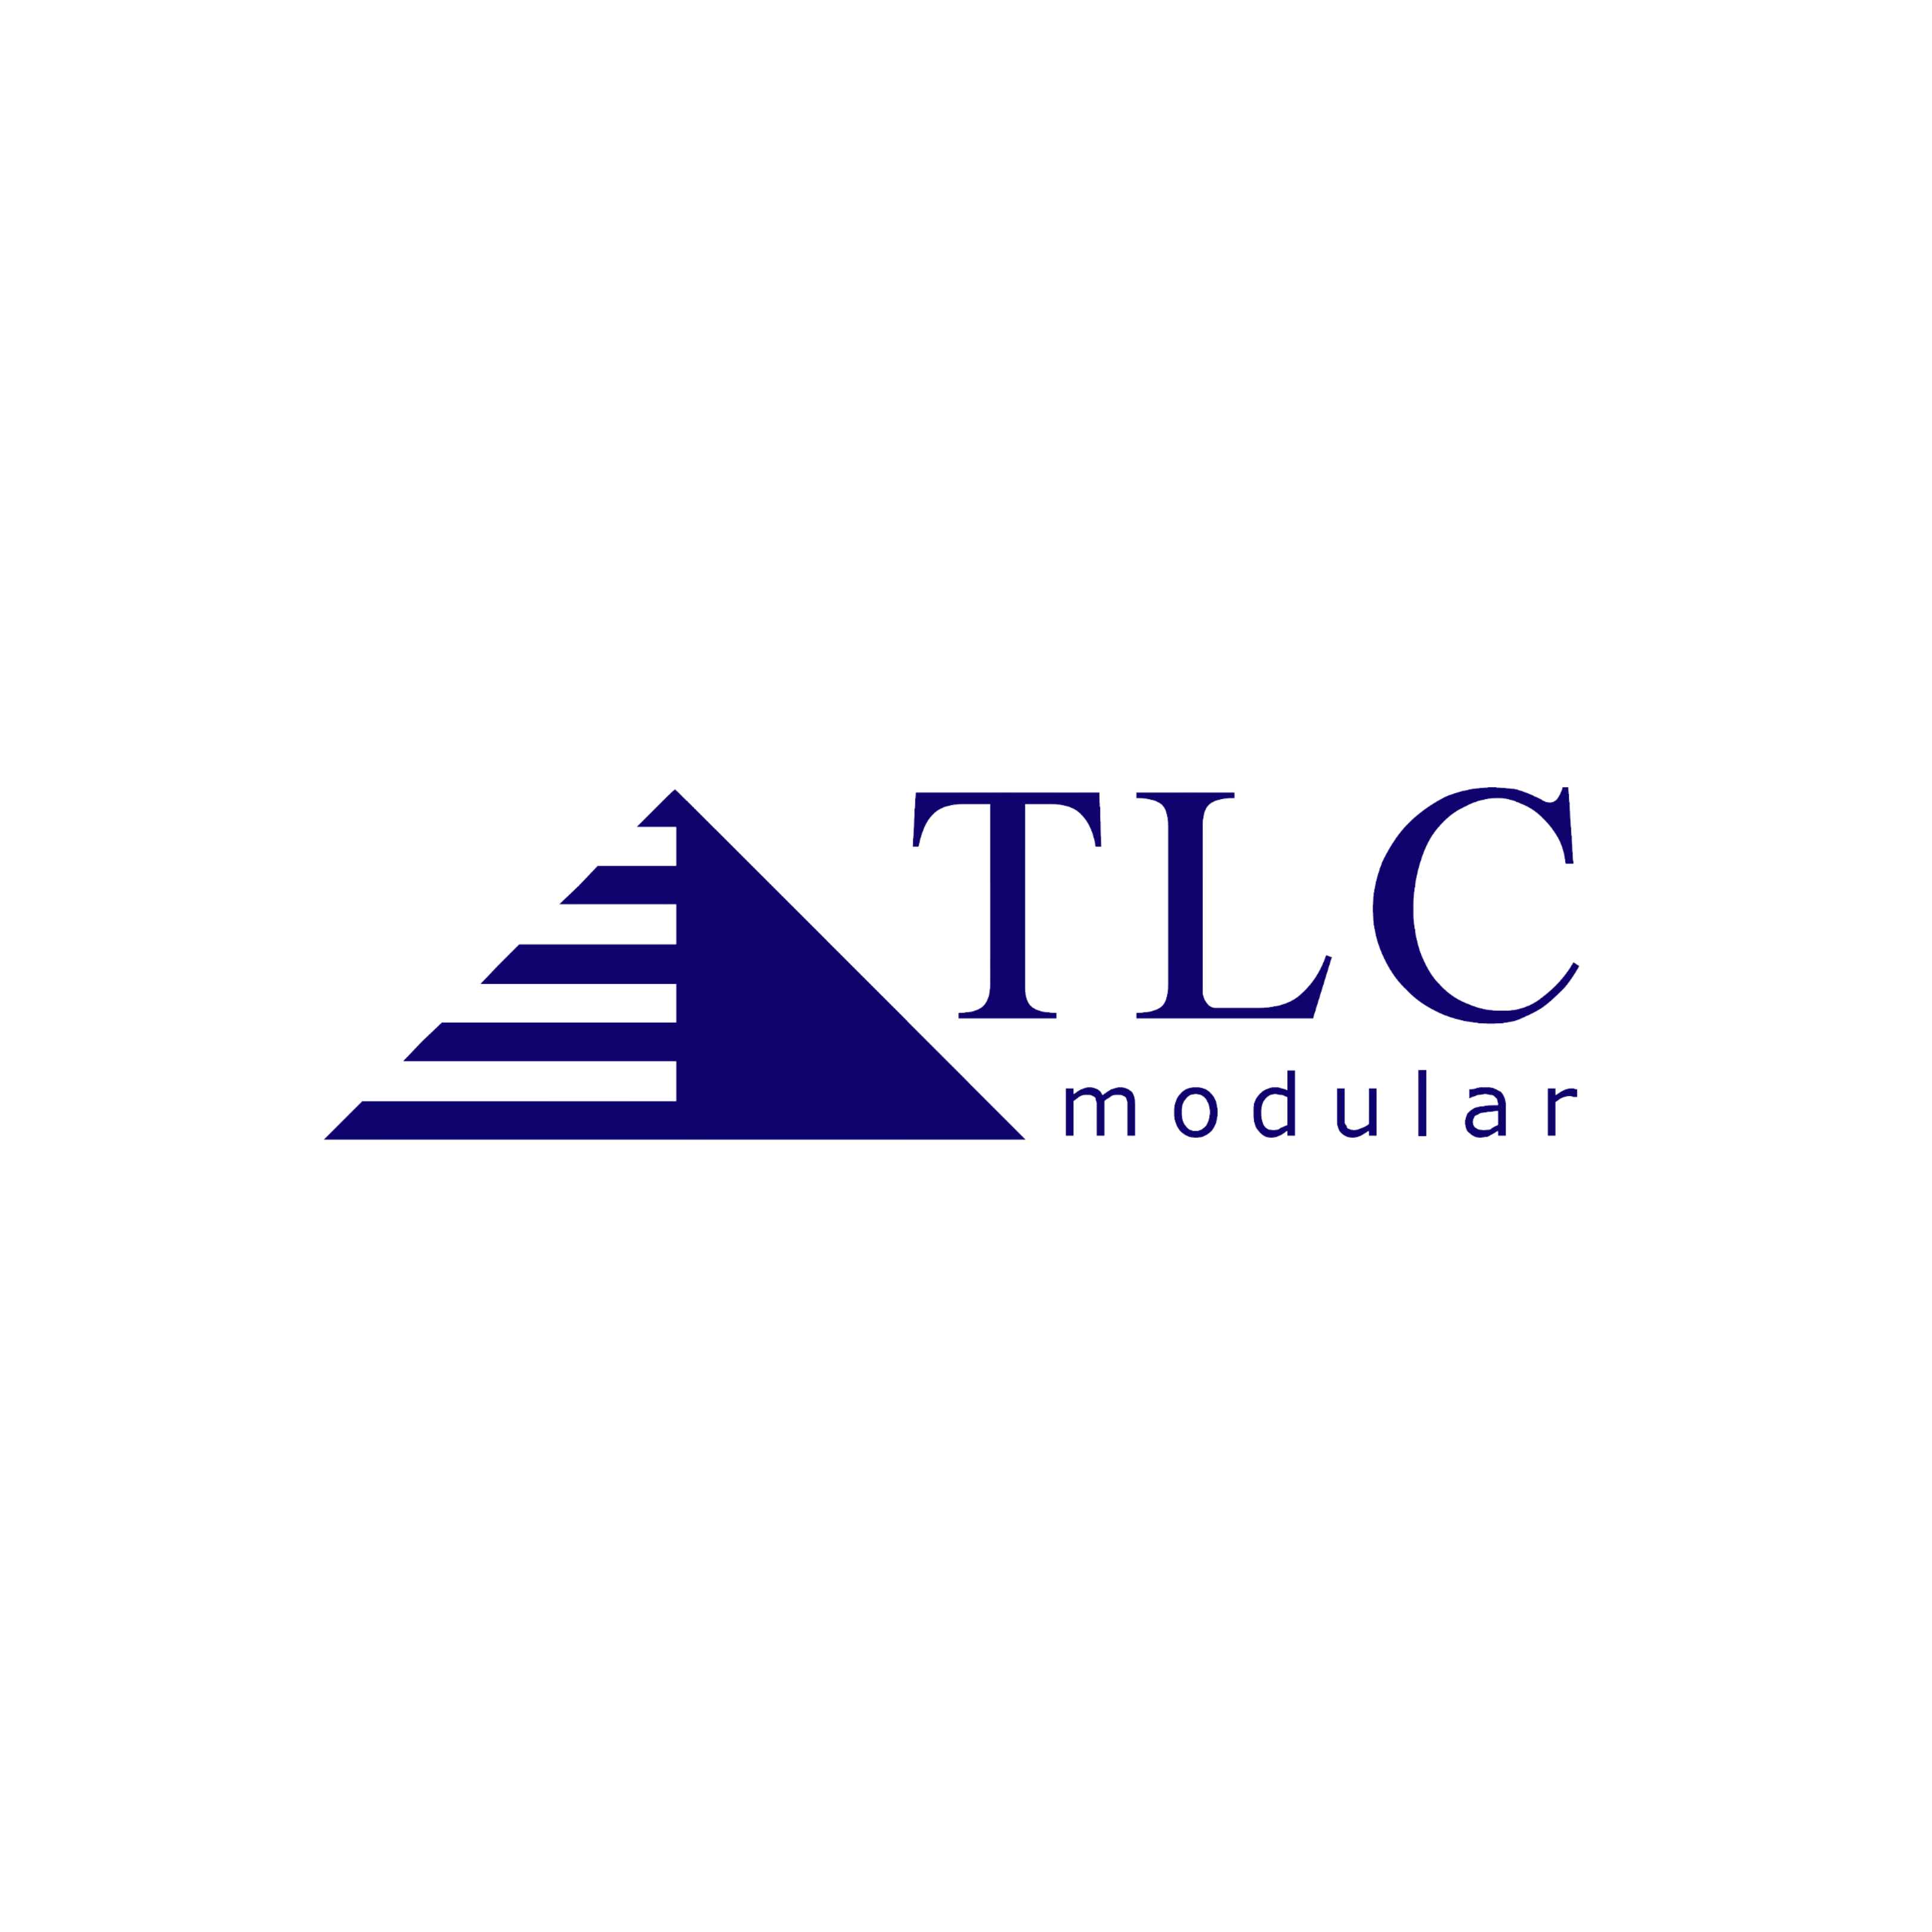 TLC-modular-GSI-client